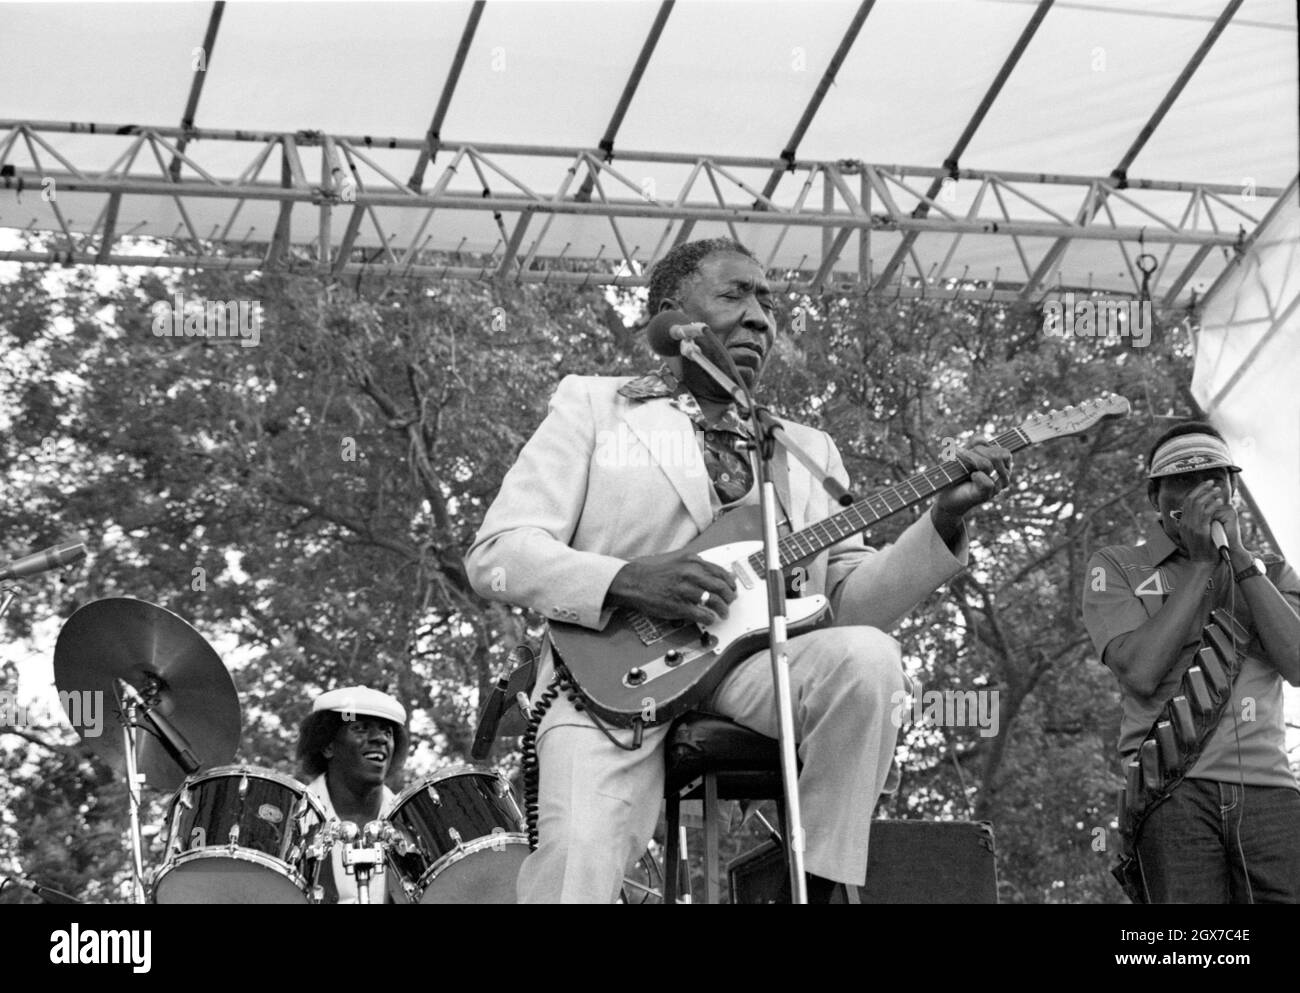 Le Bluesman américain Muddy Waters se présente au festival de jazz de la radio Capital à Knebworth, en Angleterre, en juillet 1981. Banque D'Images